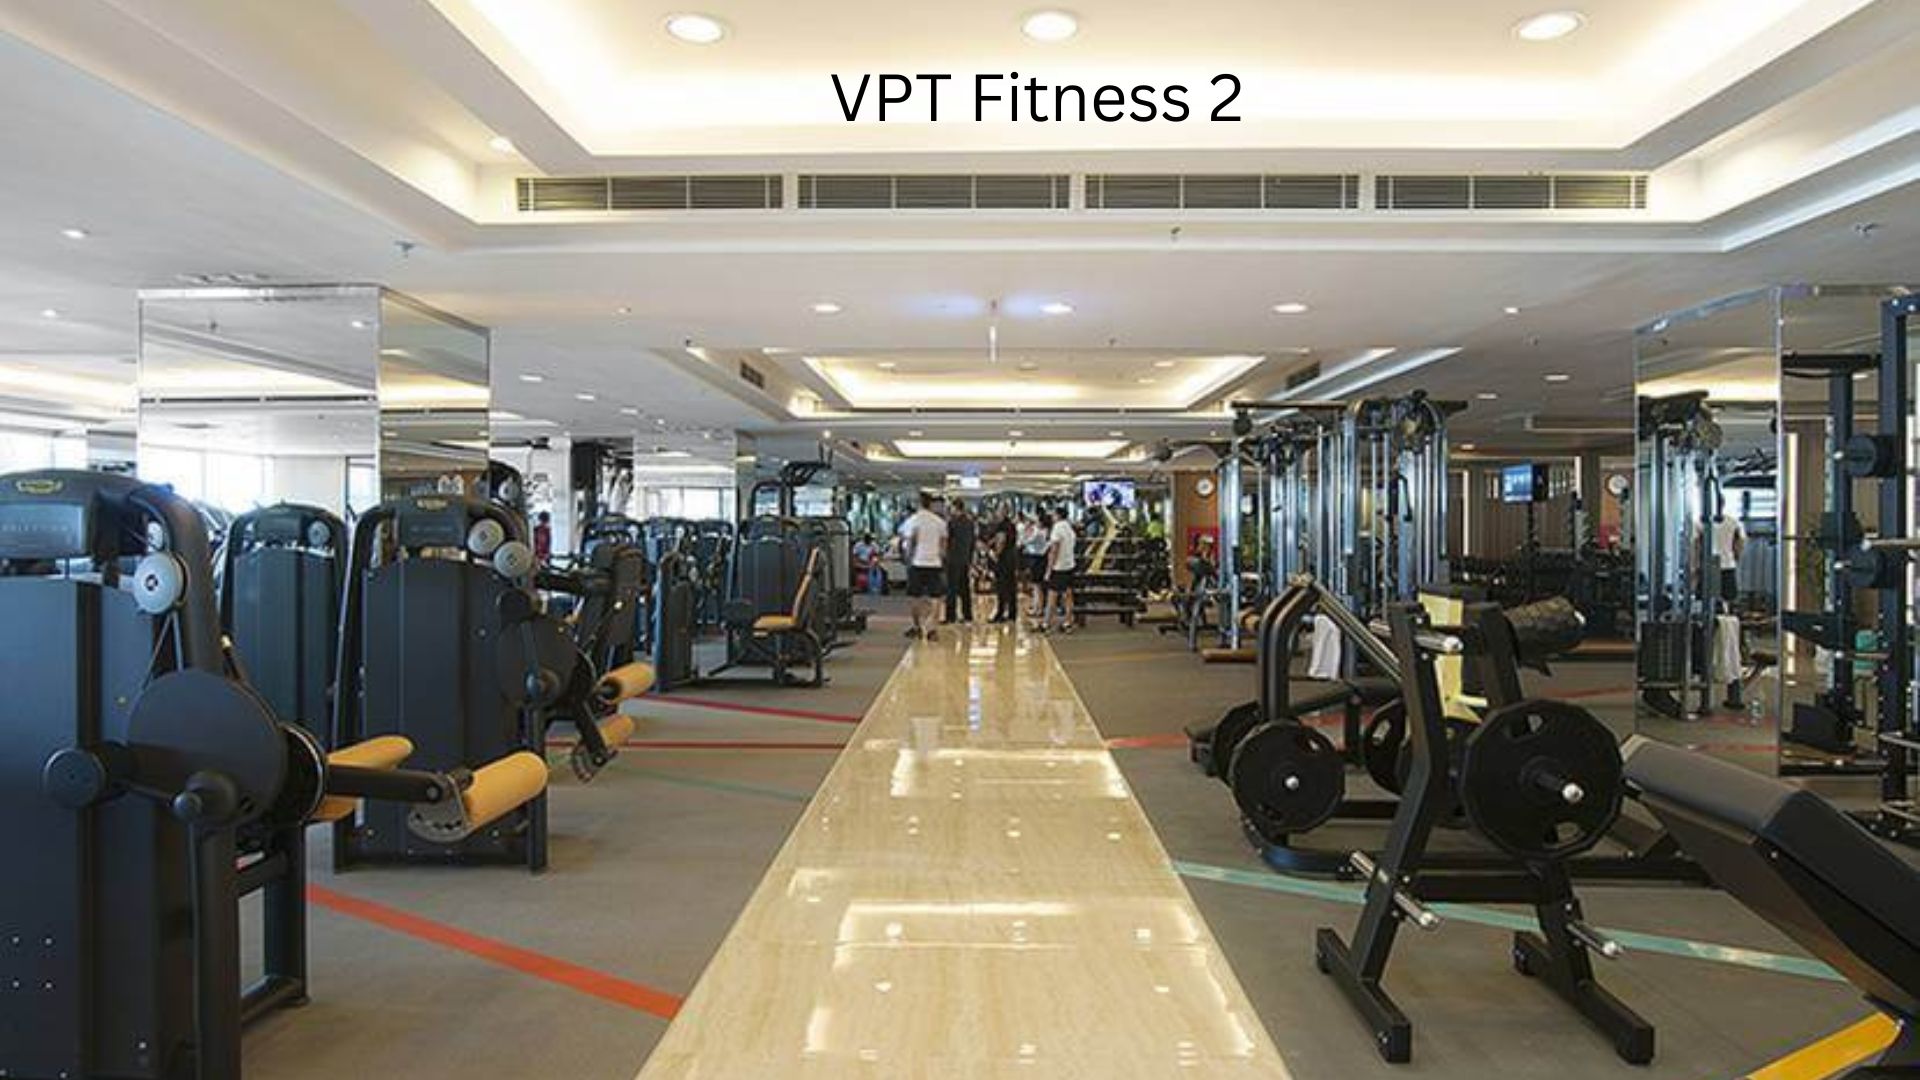 VPT Fitness 2 - Phòng tập gym gần đây ở Đà Nẵng